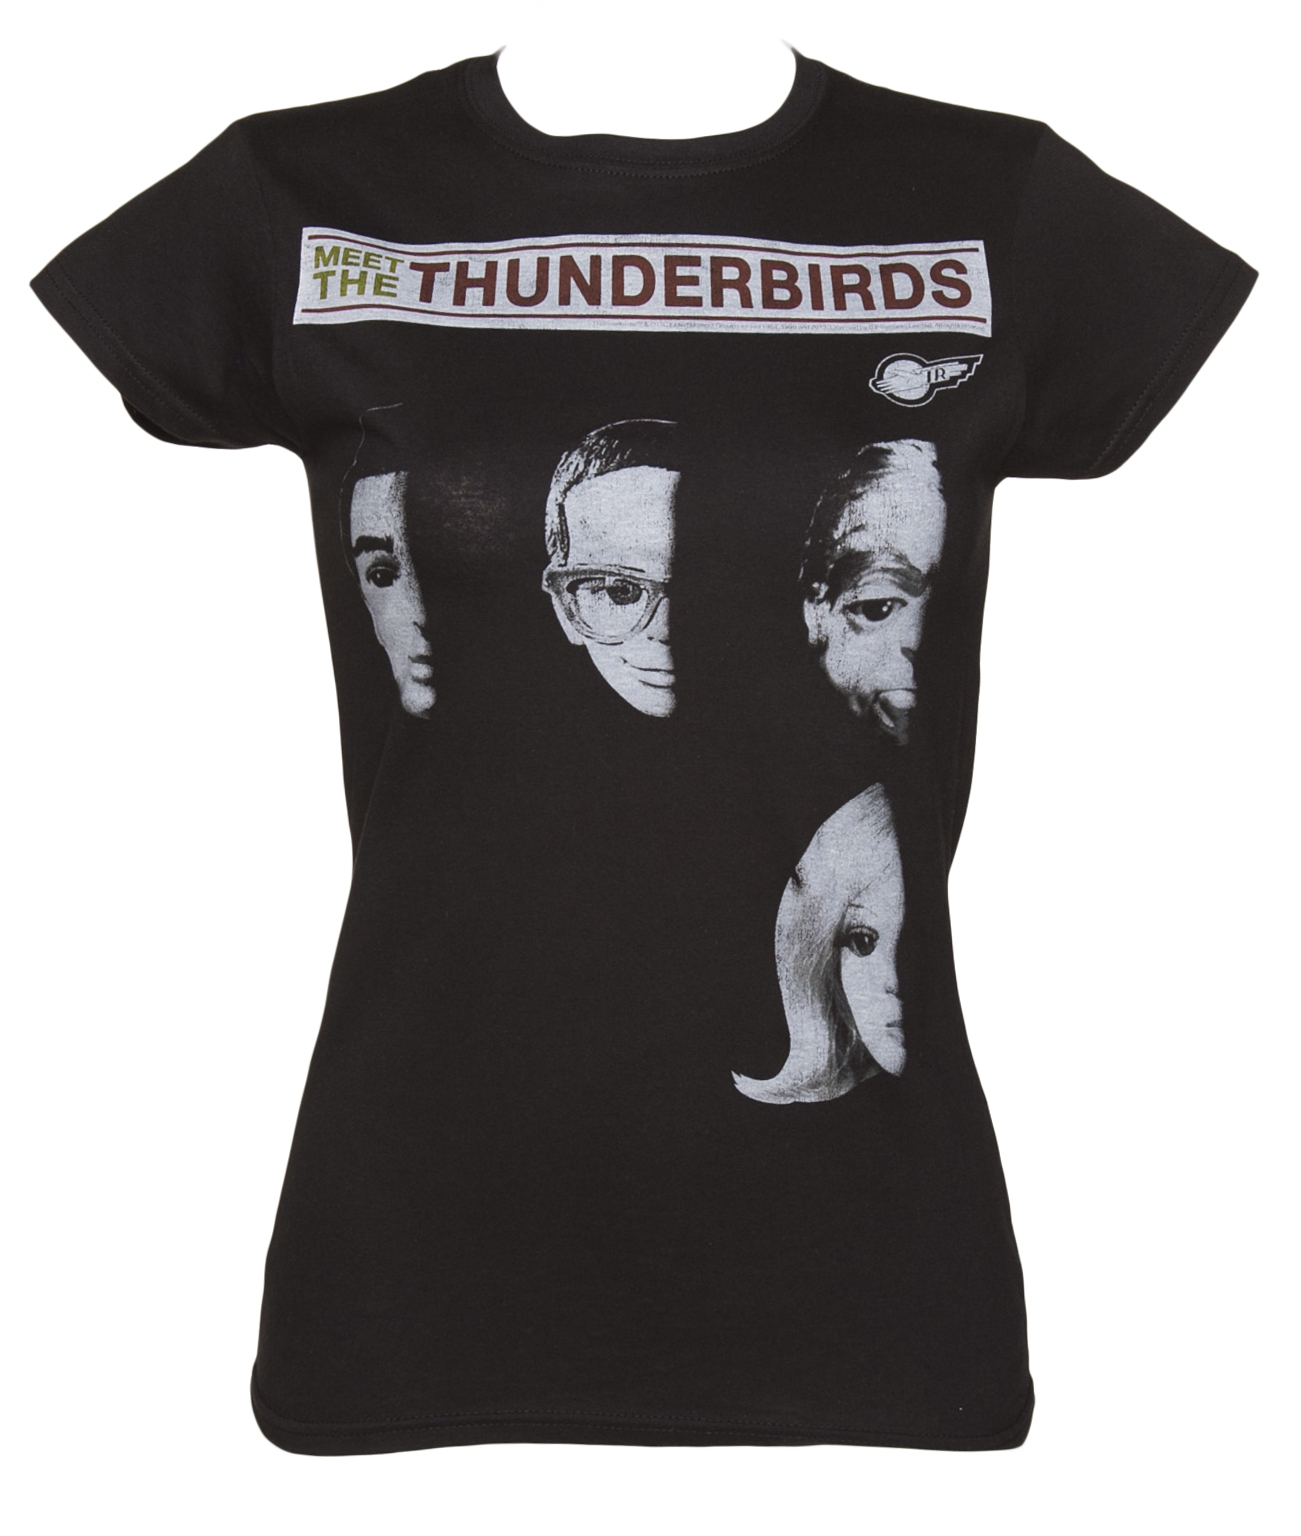 TruffleShuffle Ladies Meet The Thunderbirds T-Shirt